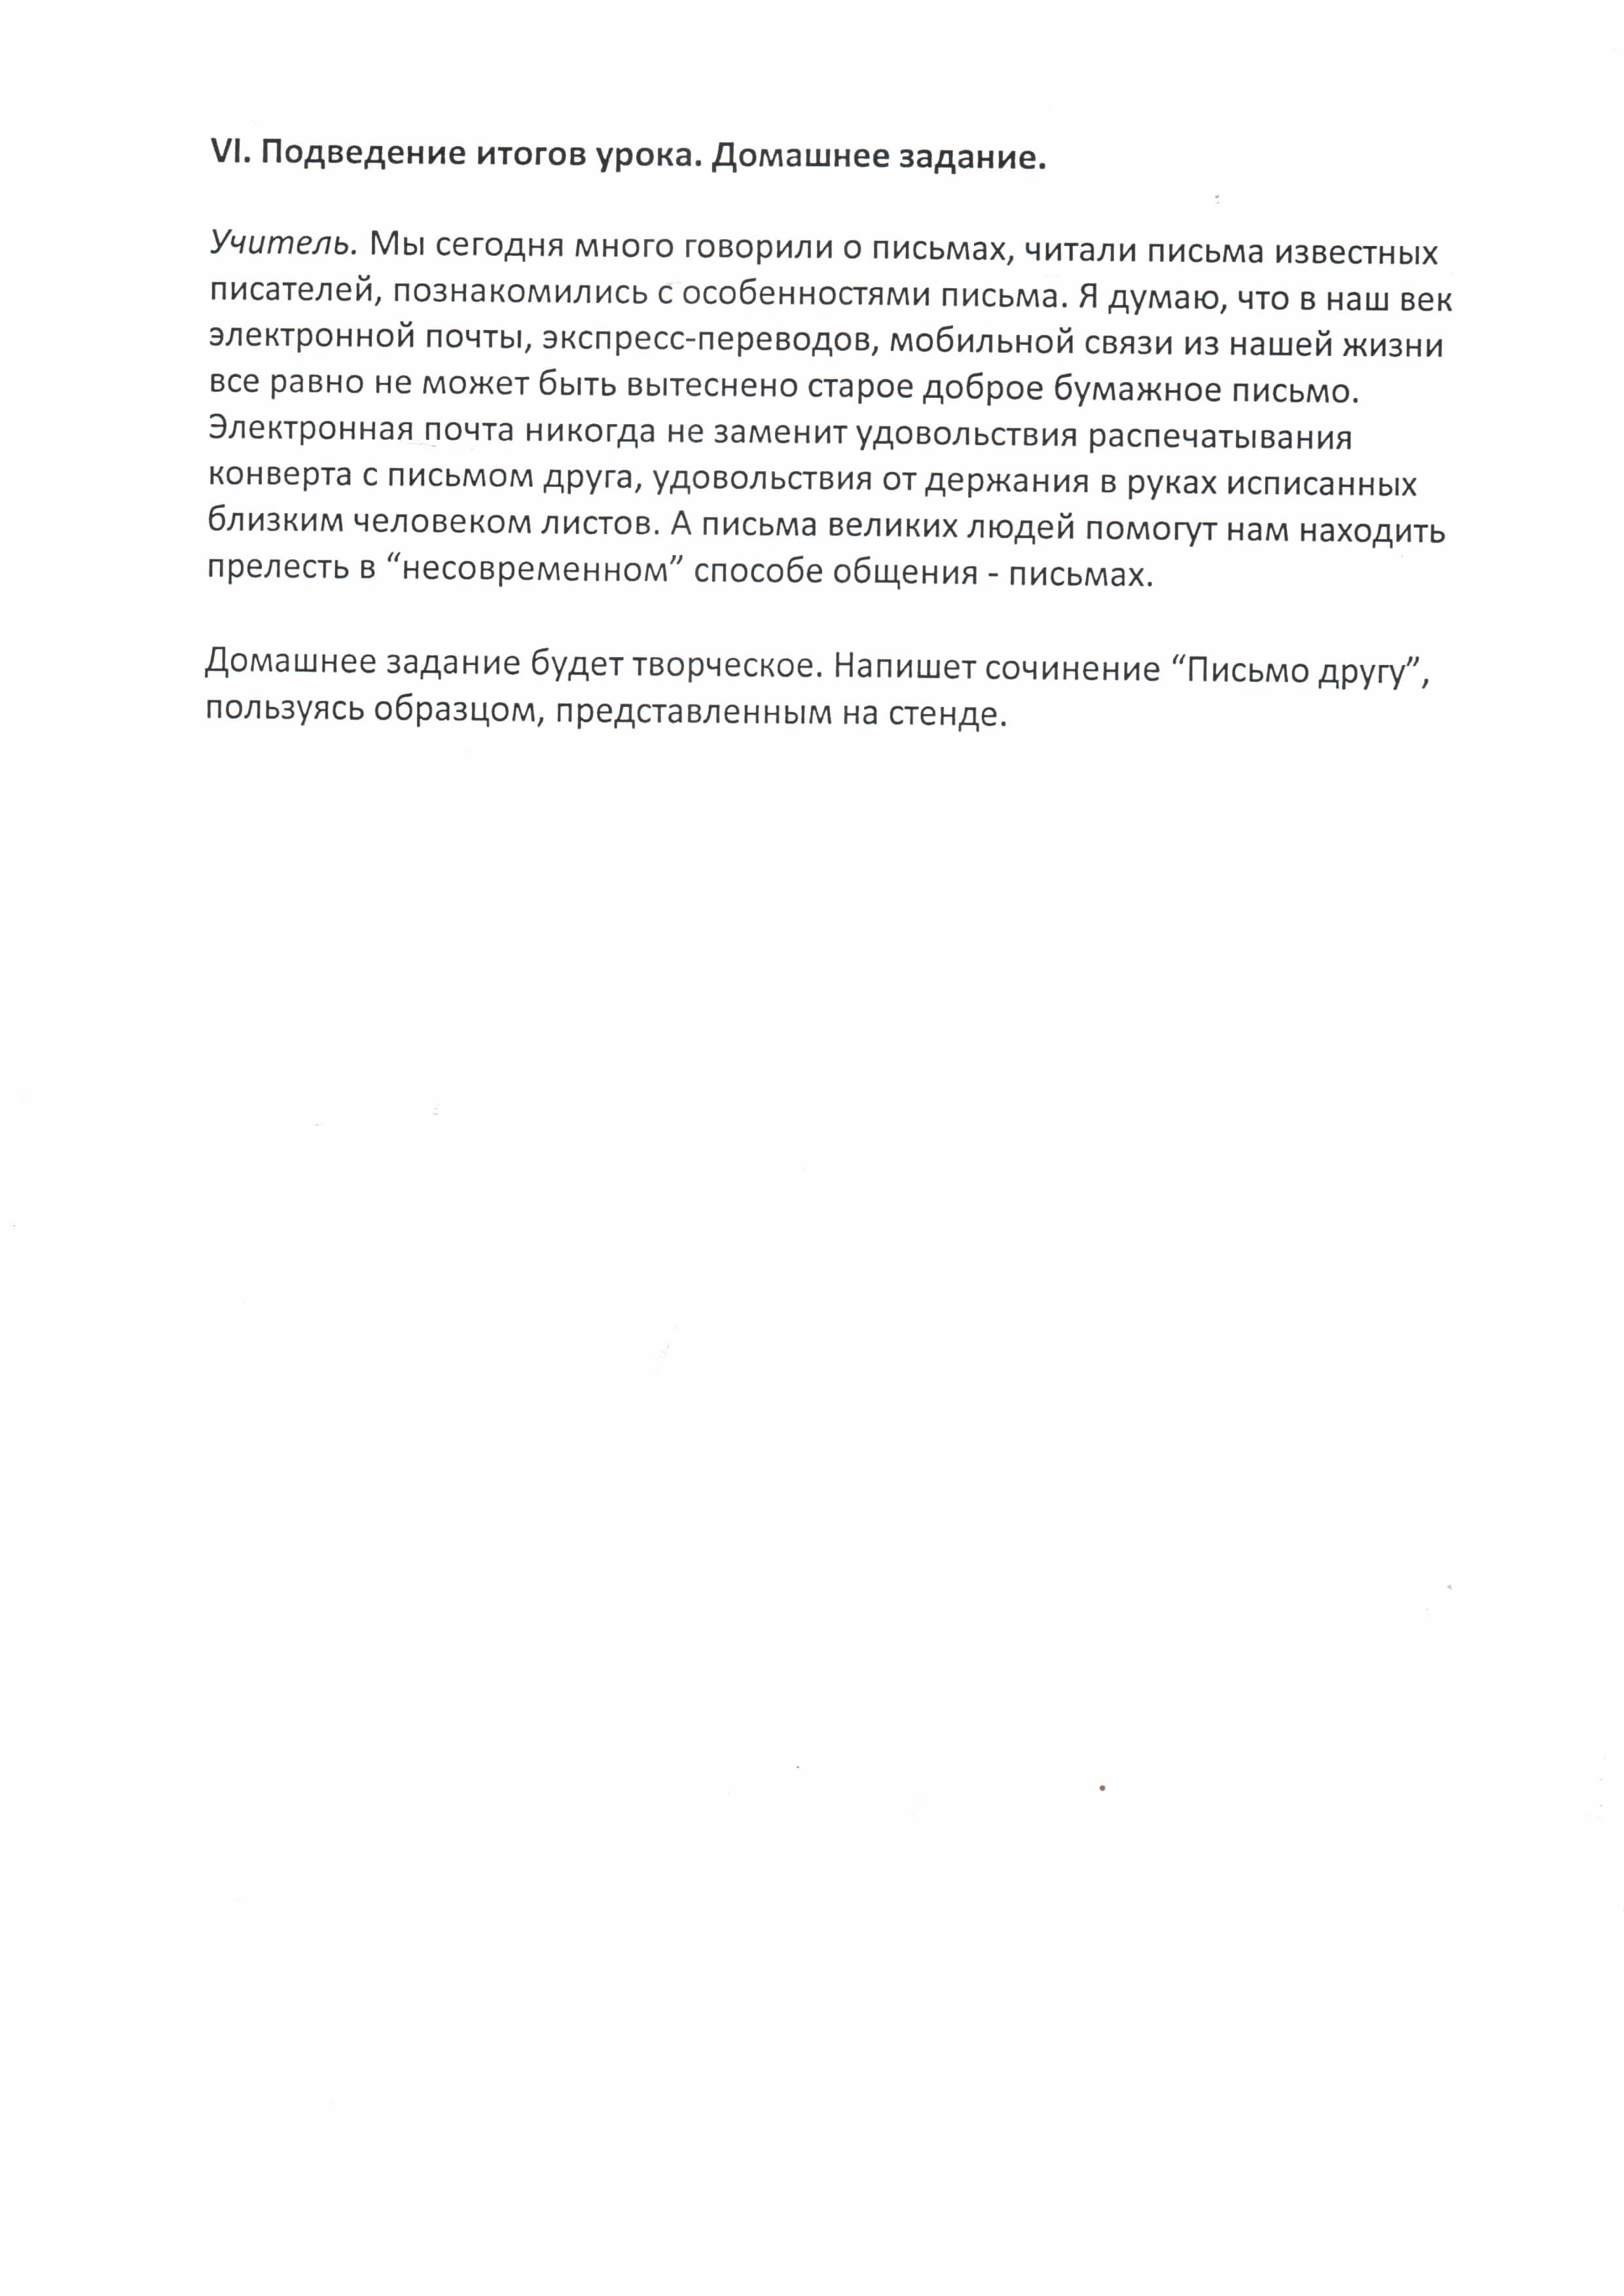 Разработка урока по русскому языку Обращения в письмах (8 класс)